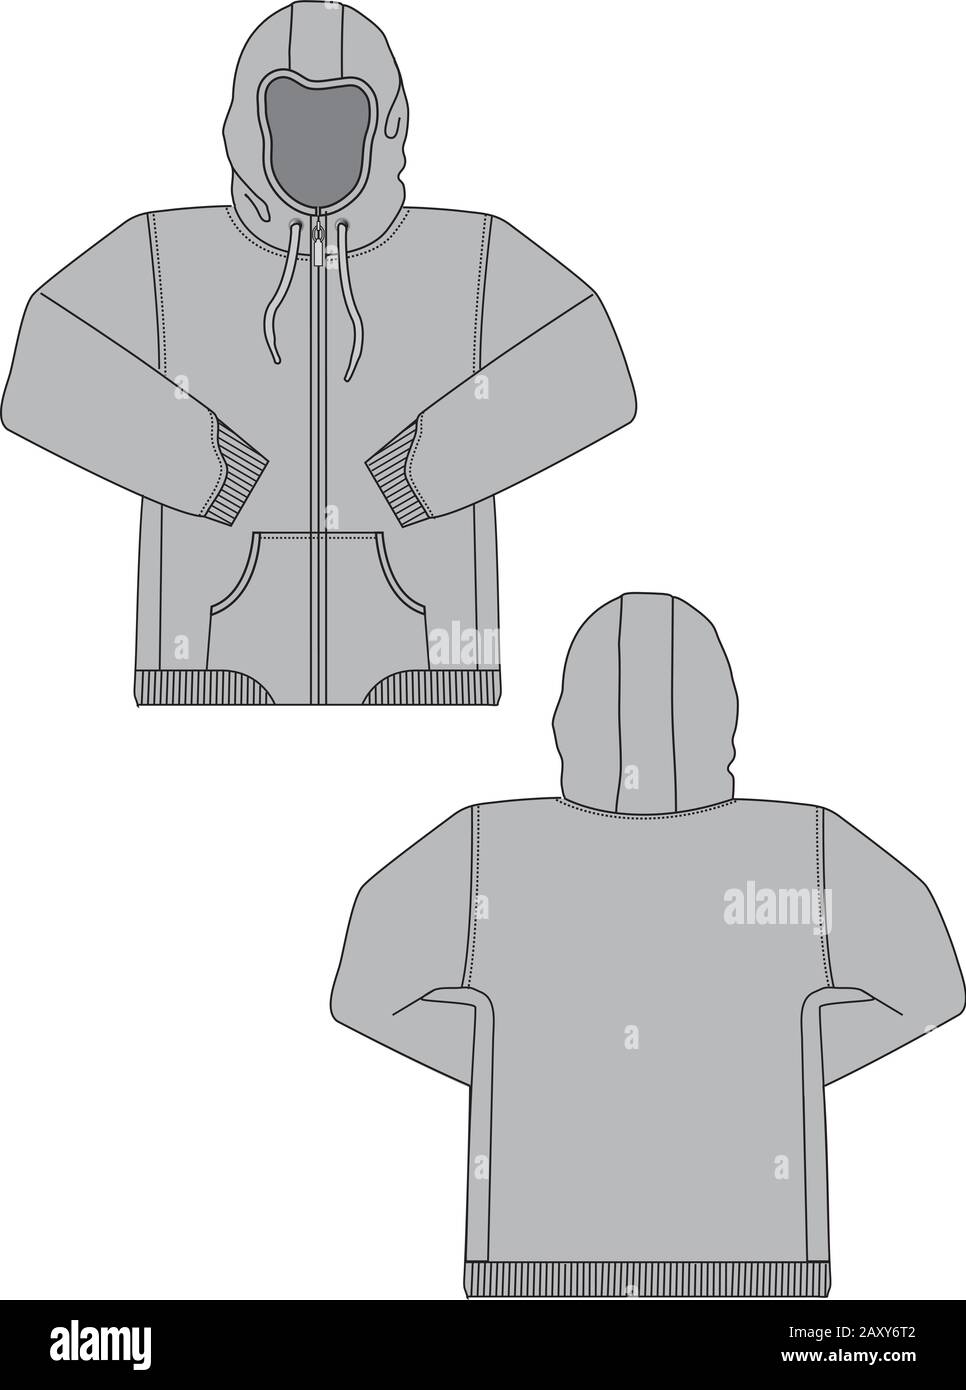 Premium Vector  Template baseball jersey over hoodie vector